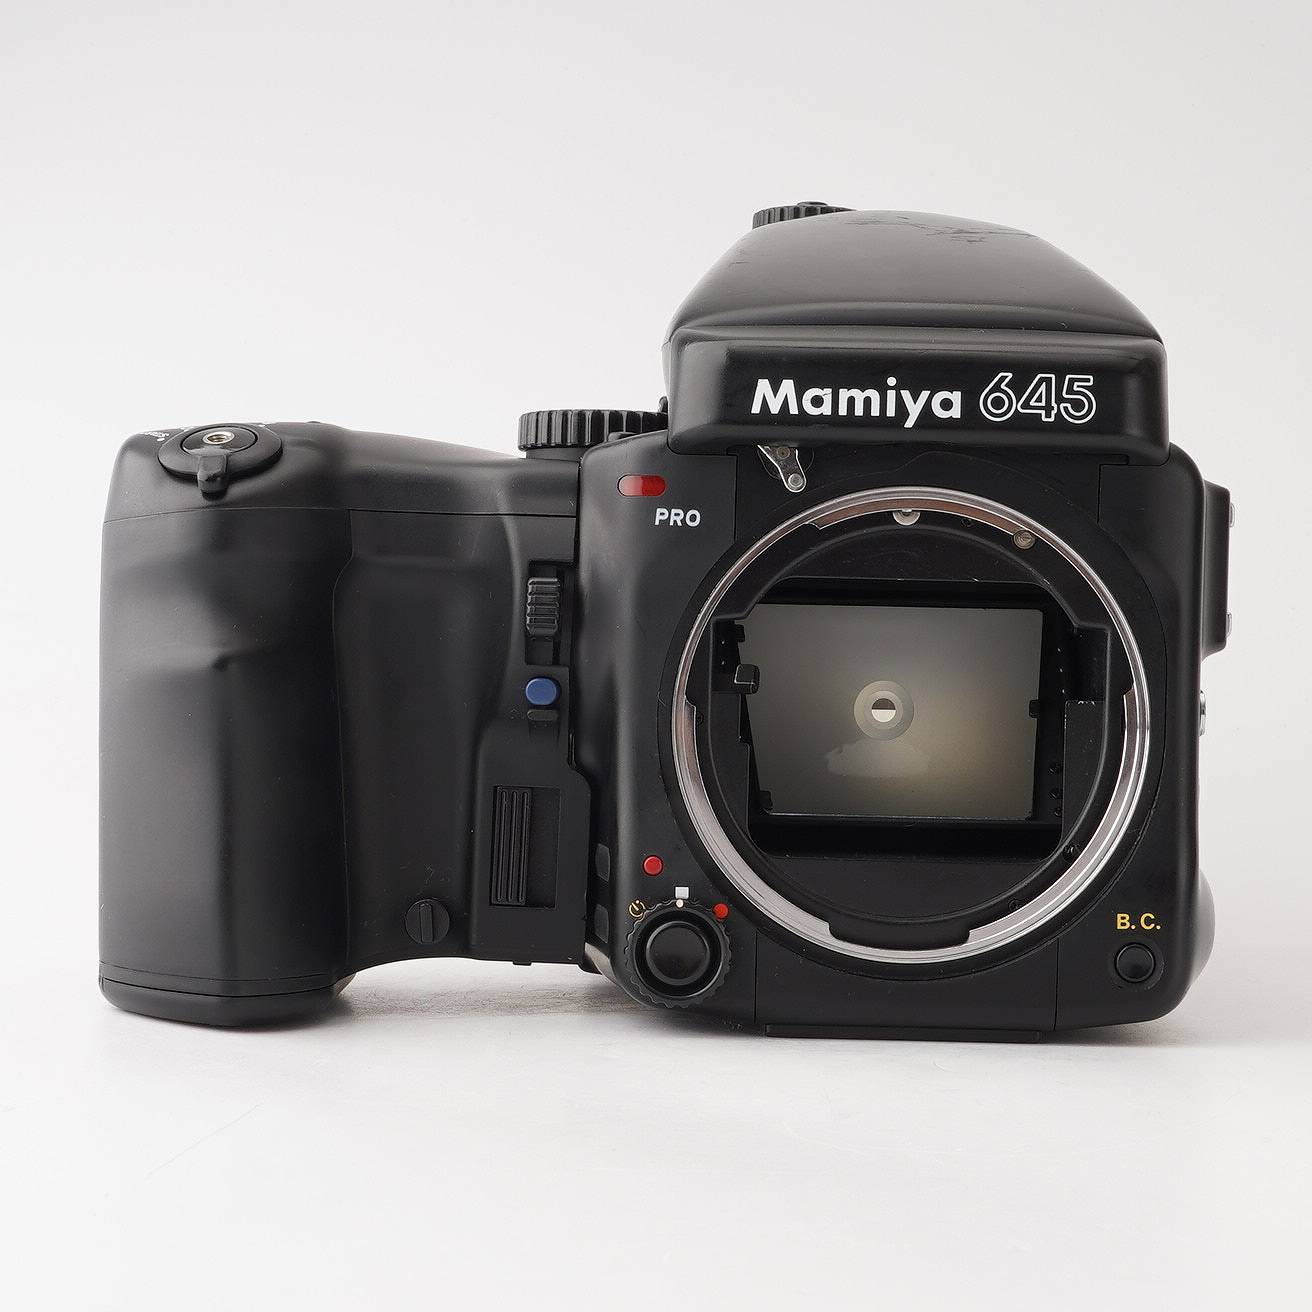 マミヤ Mamiya 645 Pro / ワインダー 中判フィルムカメラ – Natural